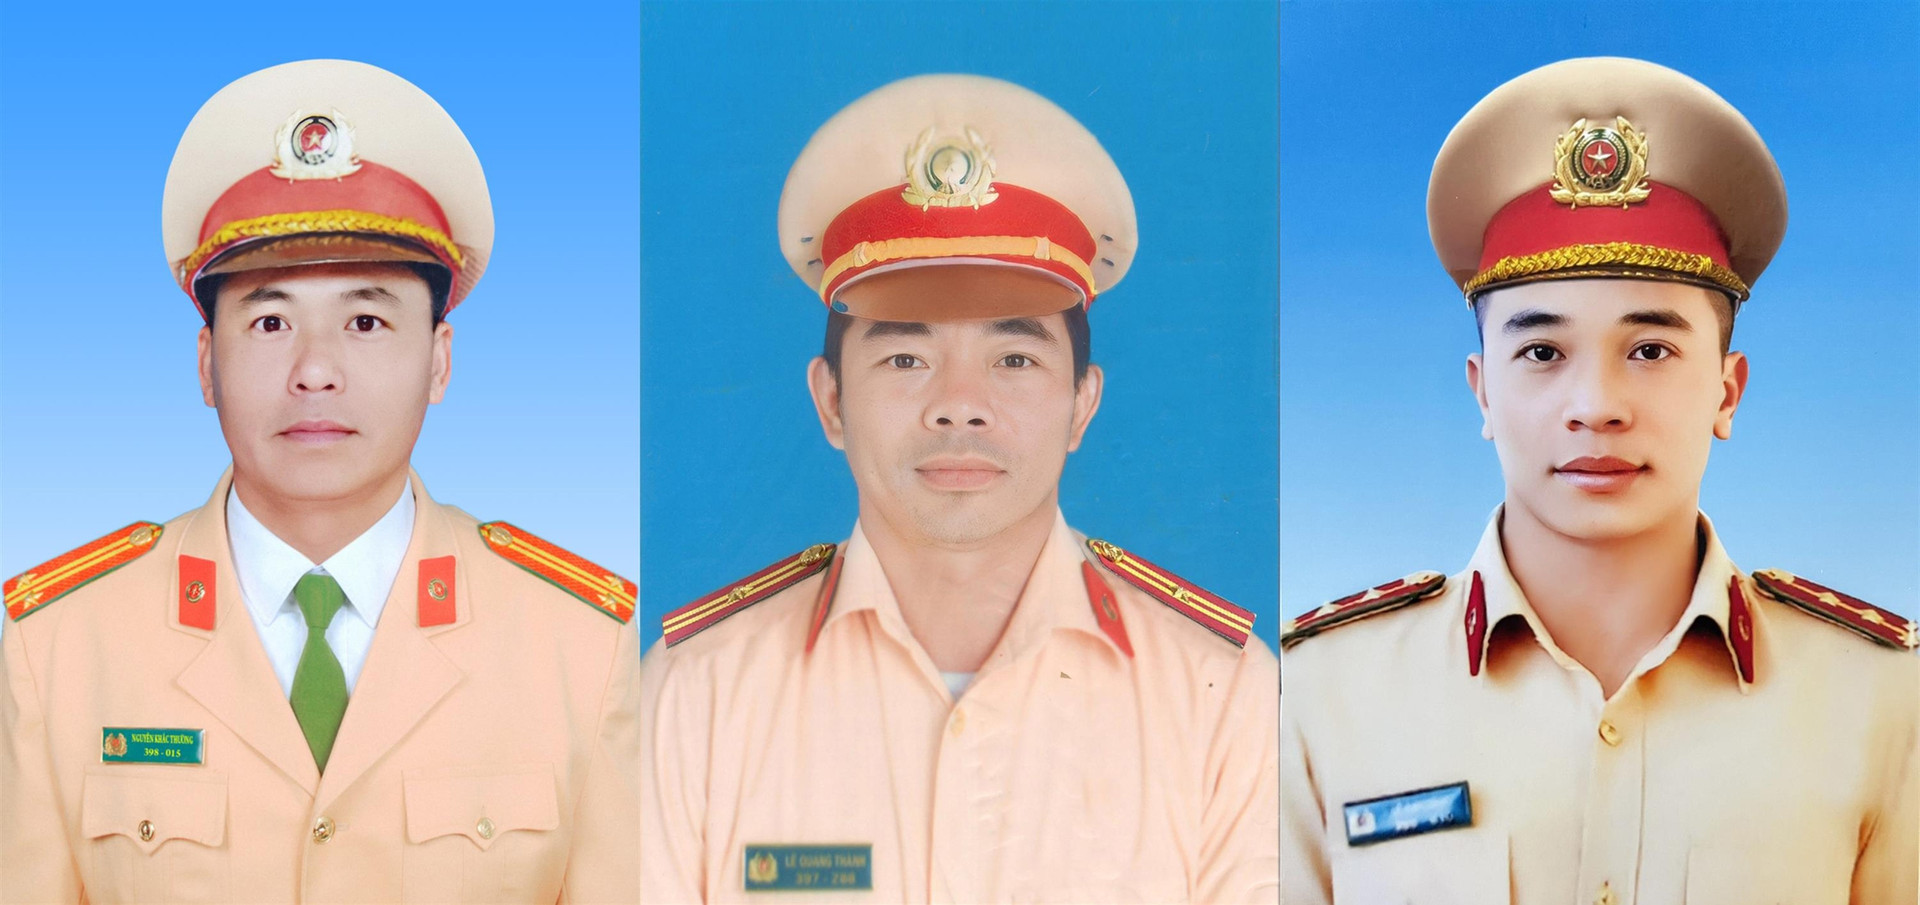 Truy thăng quân hàm 3 CSGT hy sinh trong vụ sạt lở đèo Bảo Lộc - Ảnh 1.